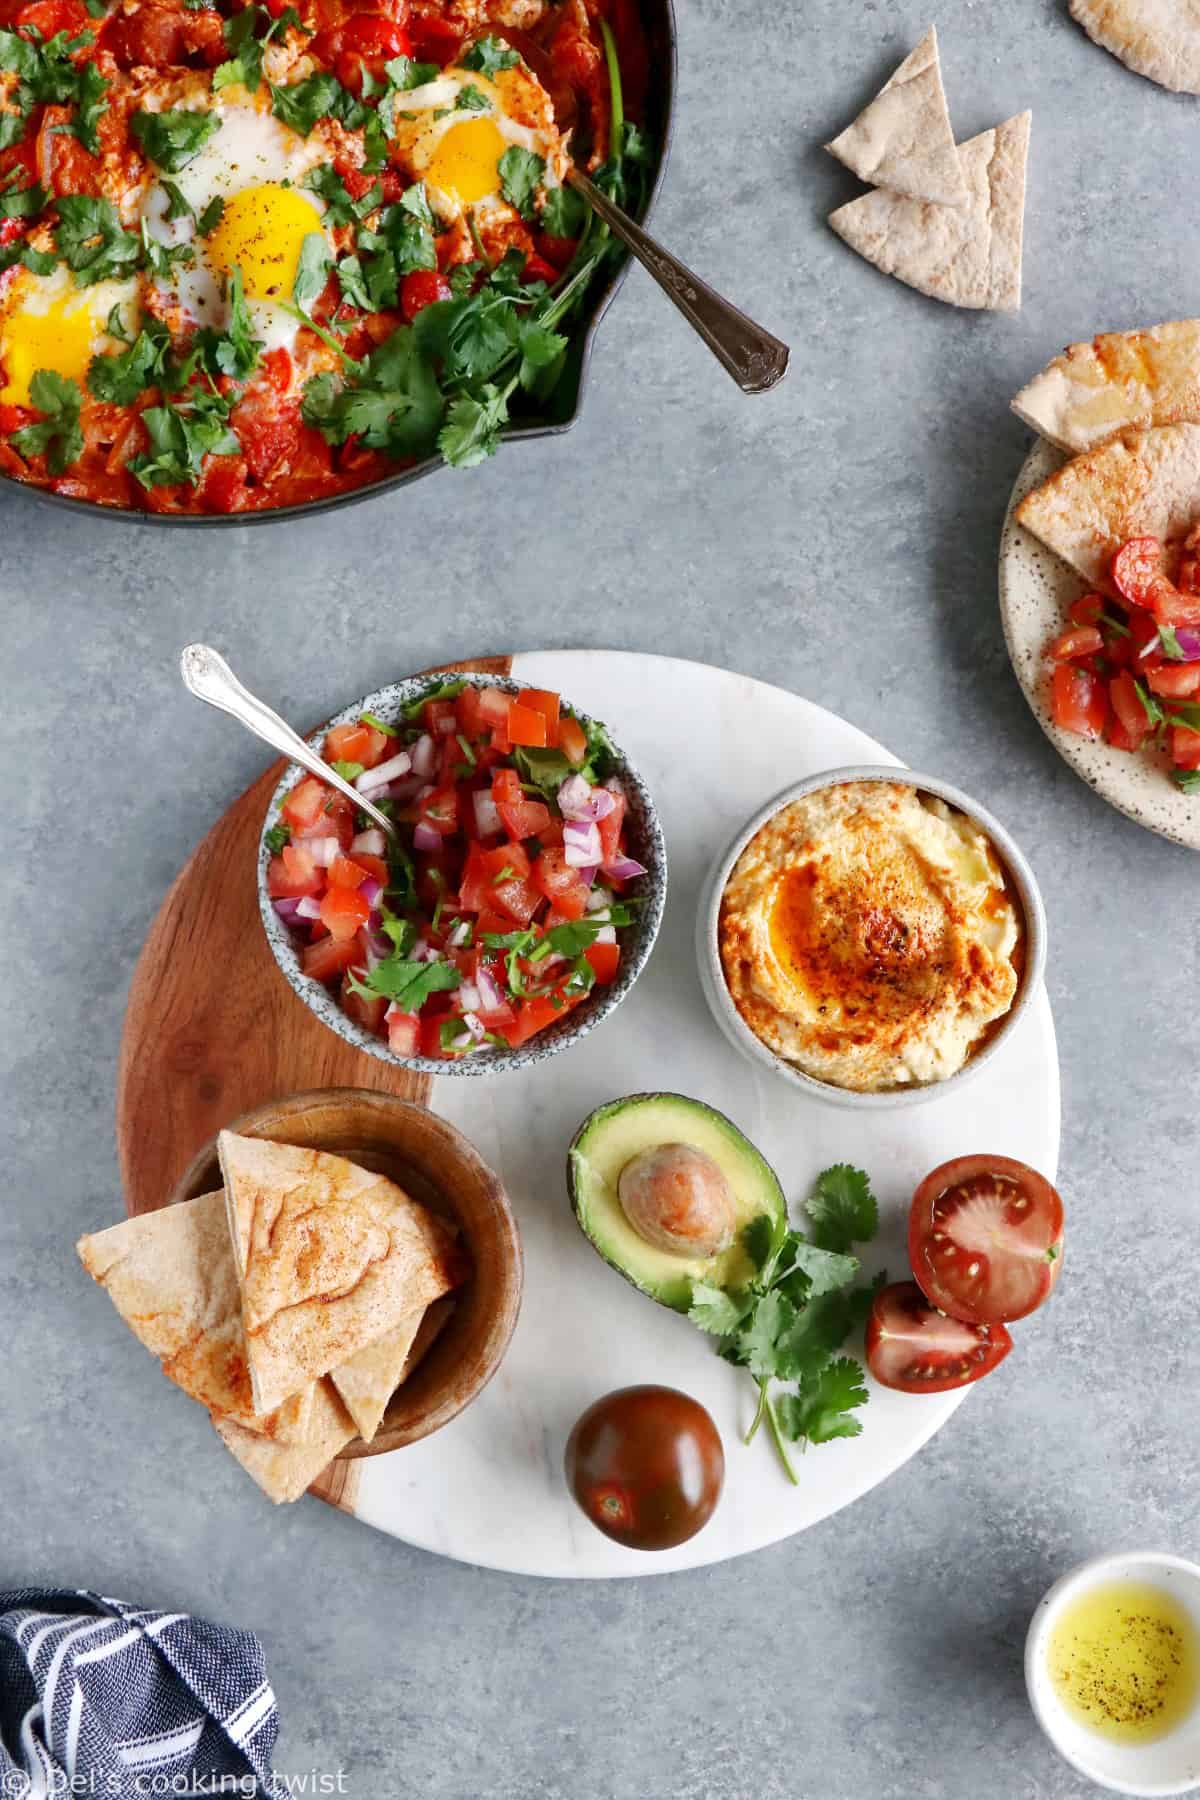 Comment servir une shakshuka ? Placez-la au centre de la table et accompagnez-la d'une déclinaison de petits plats, pains et salade pour faire du repas un véritable festin !